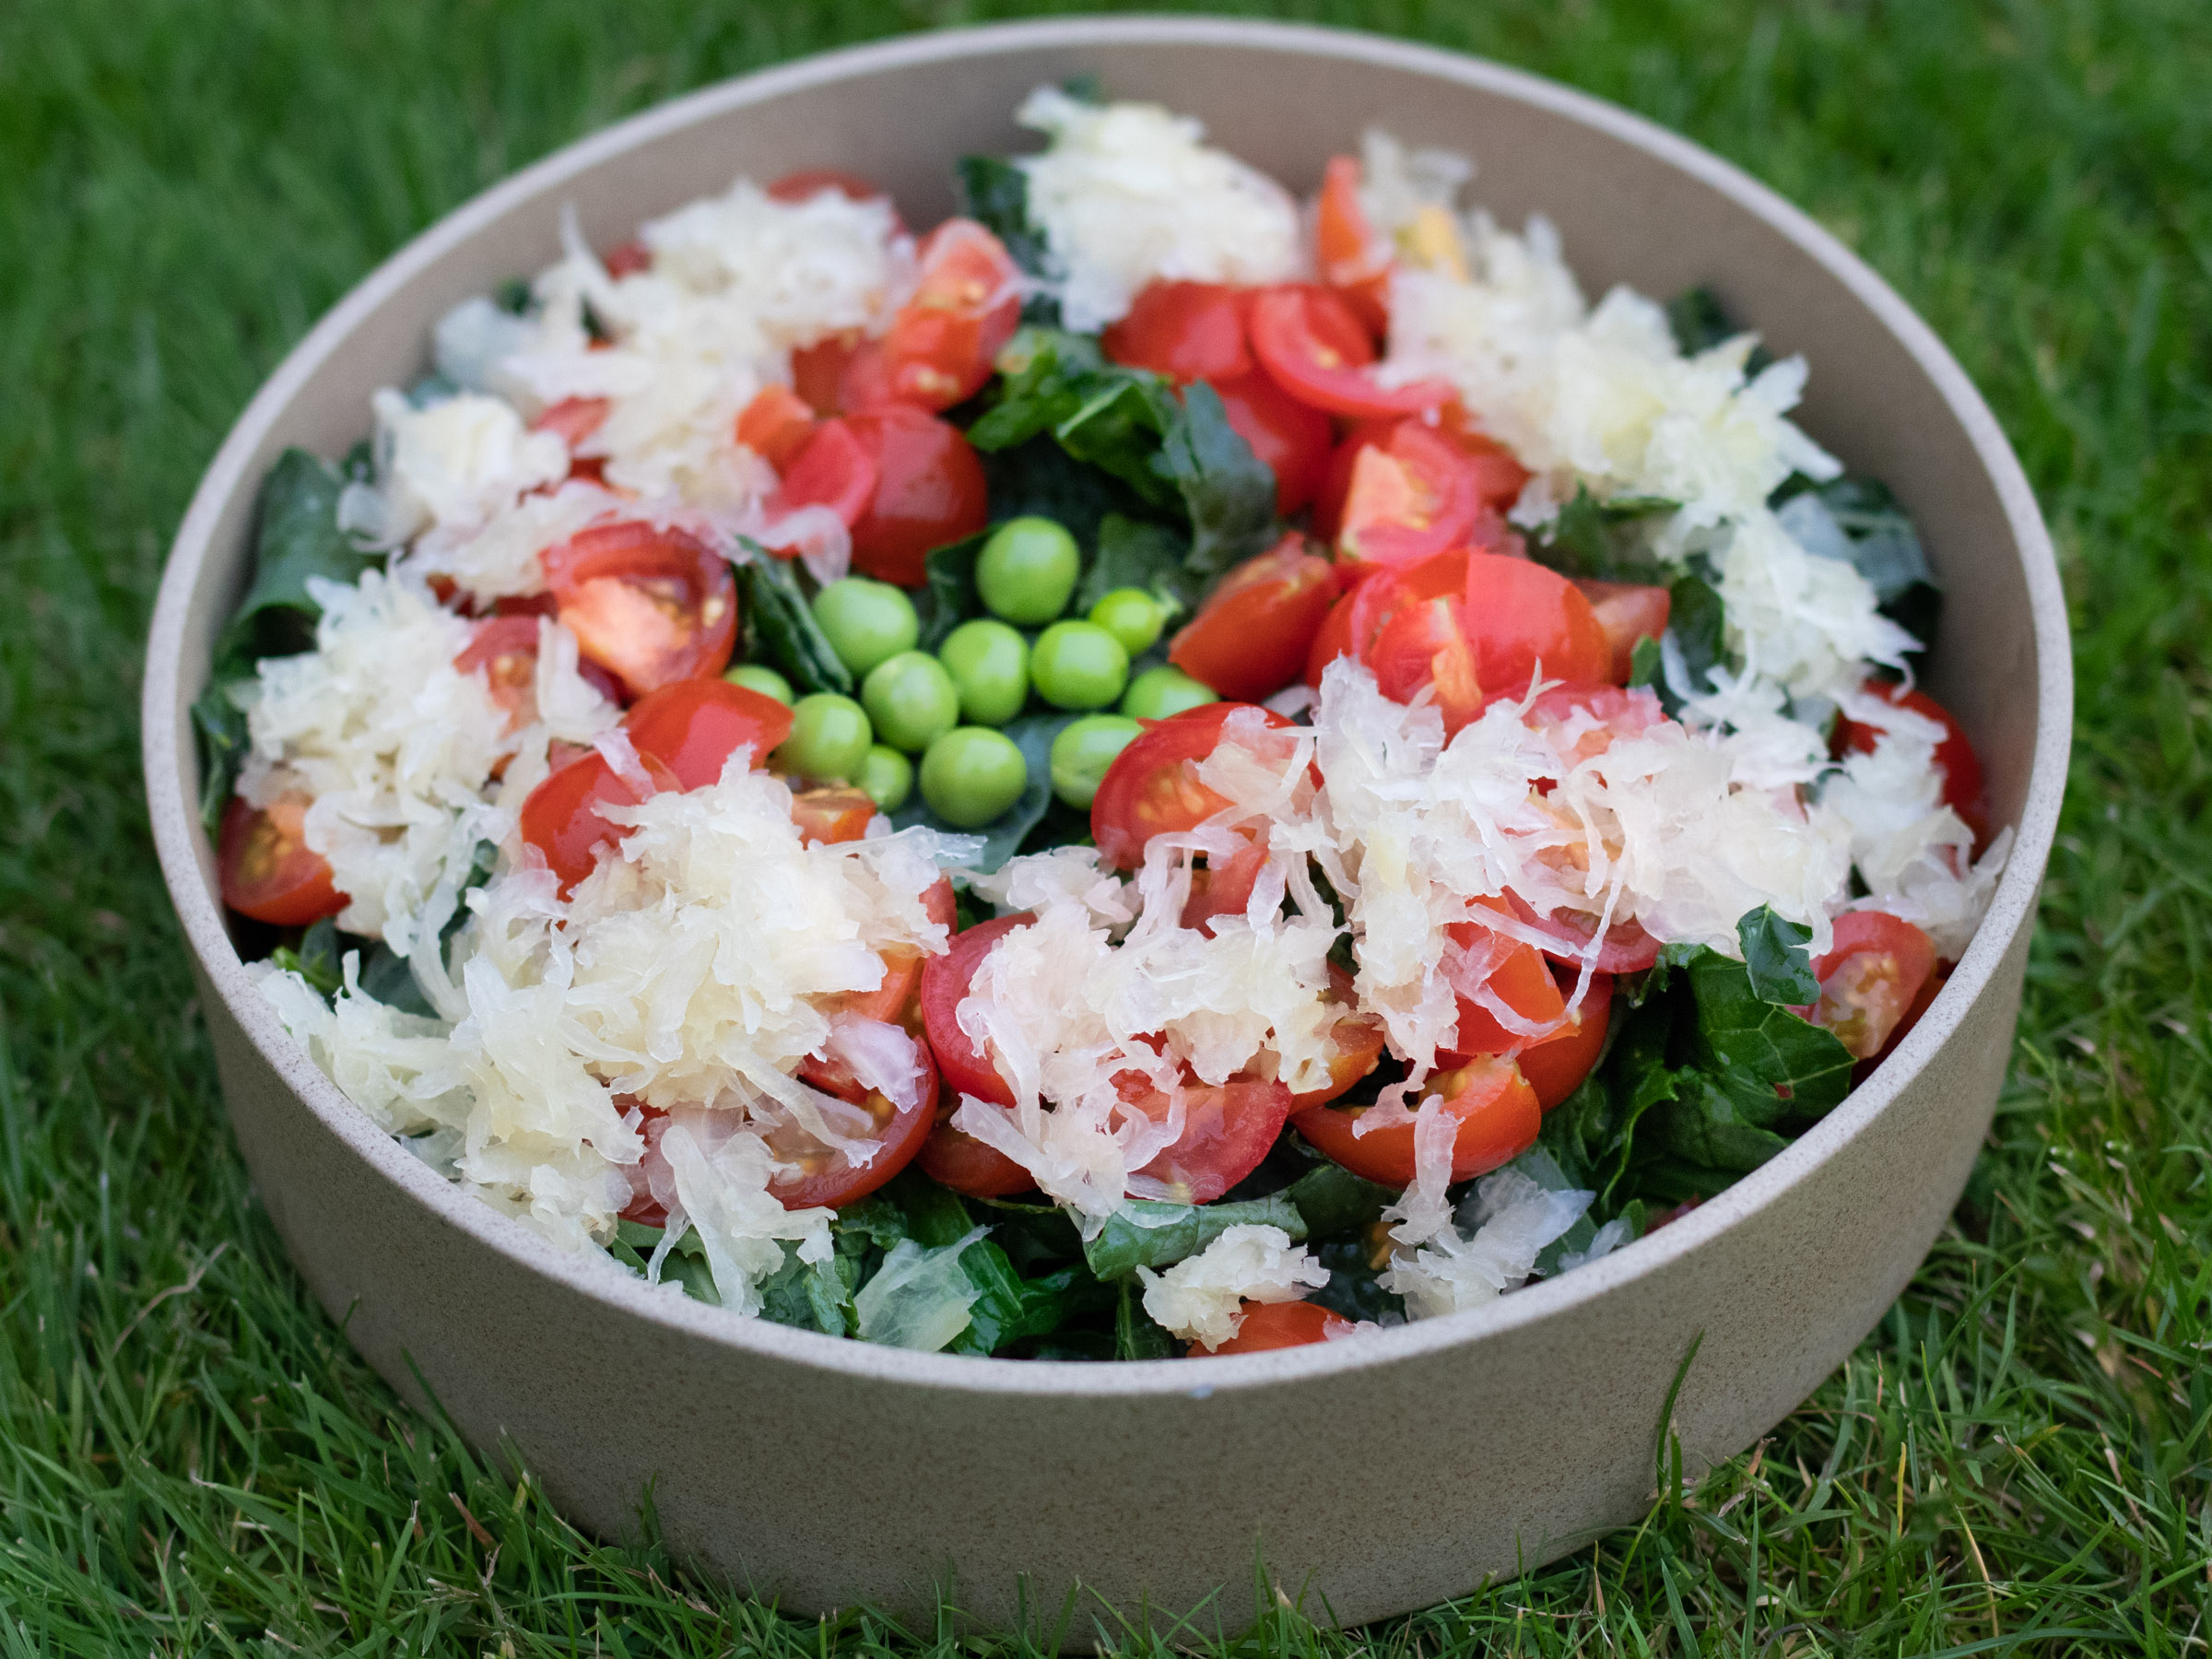 Garden Kale Salad with Sauerkraut